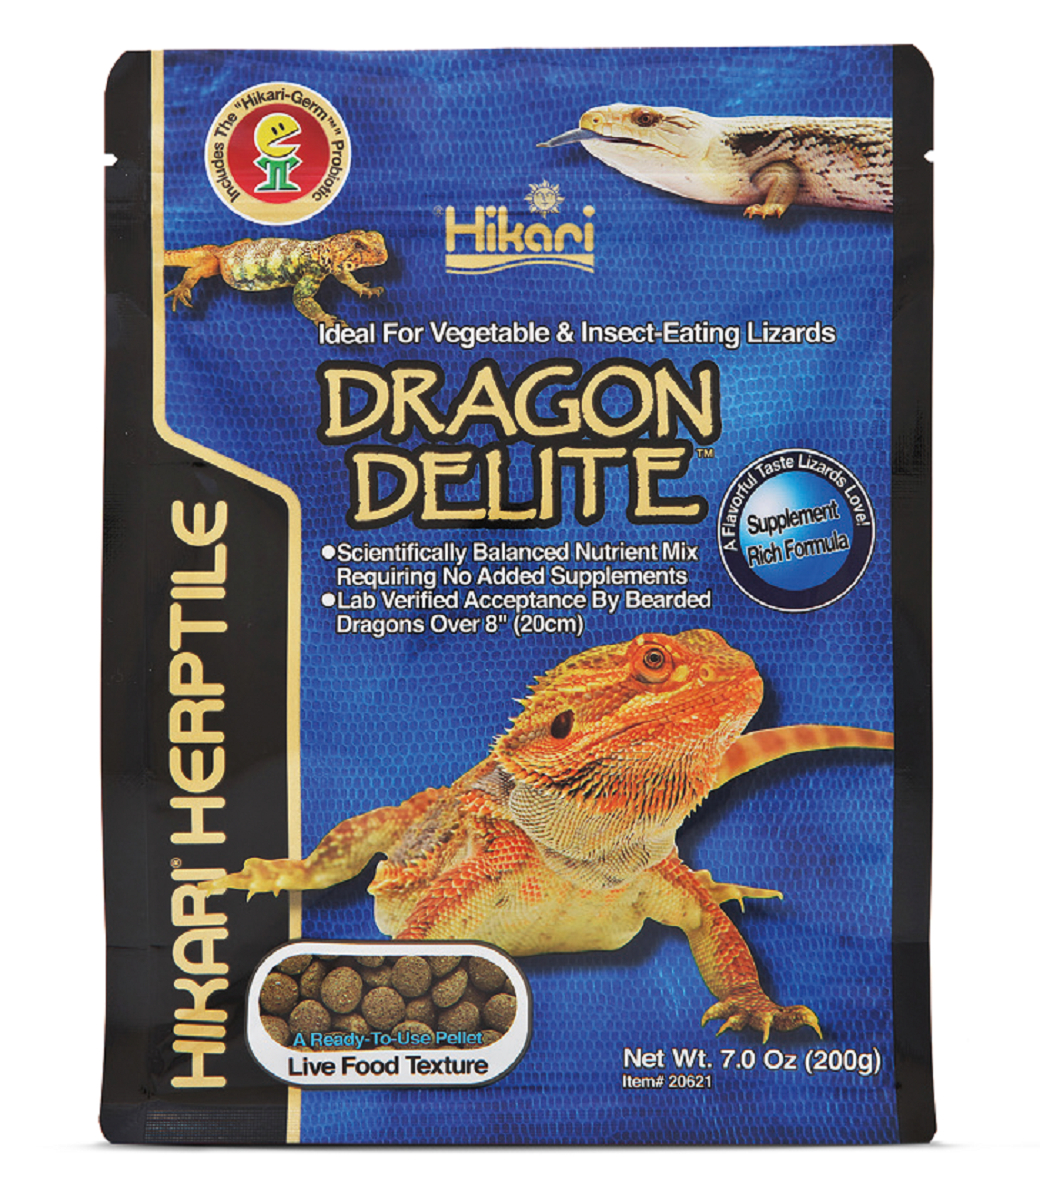 Hikari Reptile Dragon Delite Lizard Food